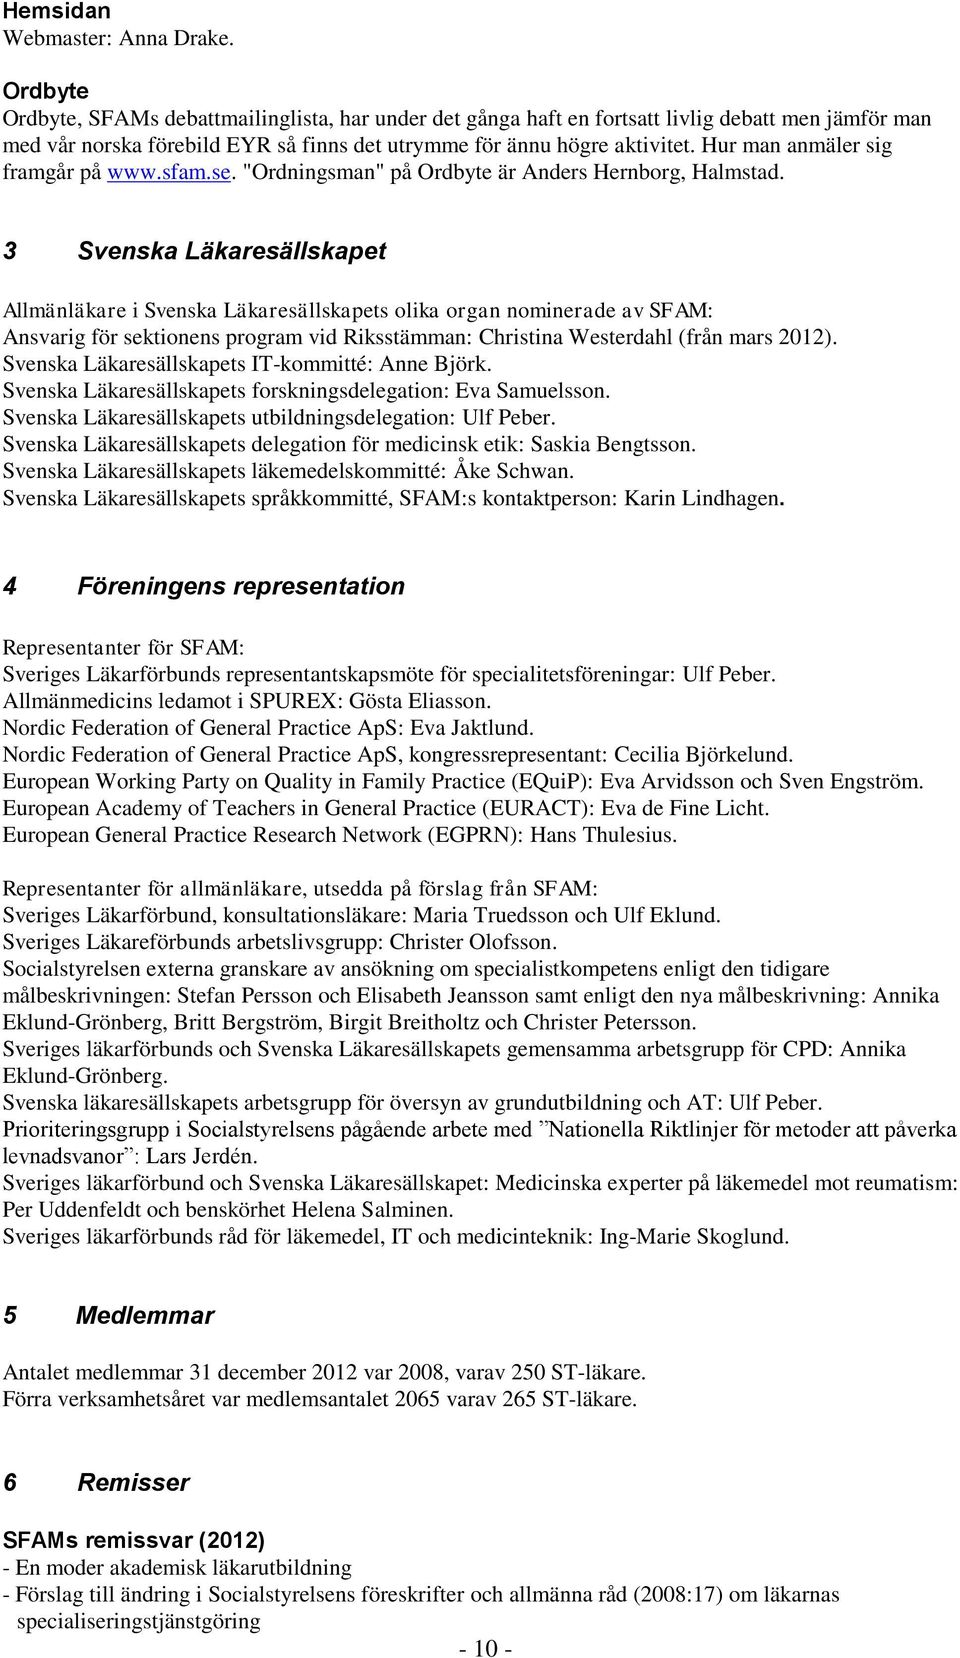 Hur man anmäler sig framgår på www.sfam.se. "Ordningsman" på Ordbyte är Anders Hernborg, Halmstad.